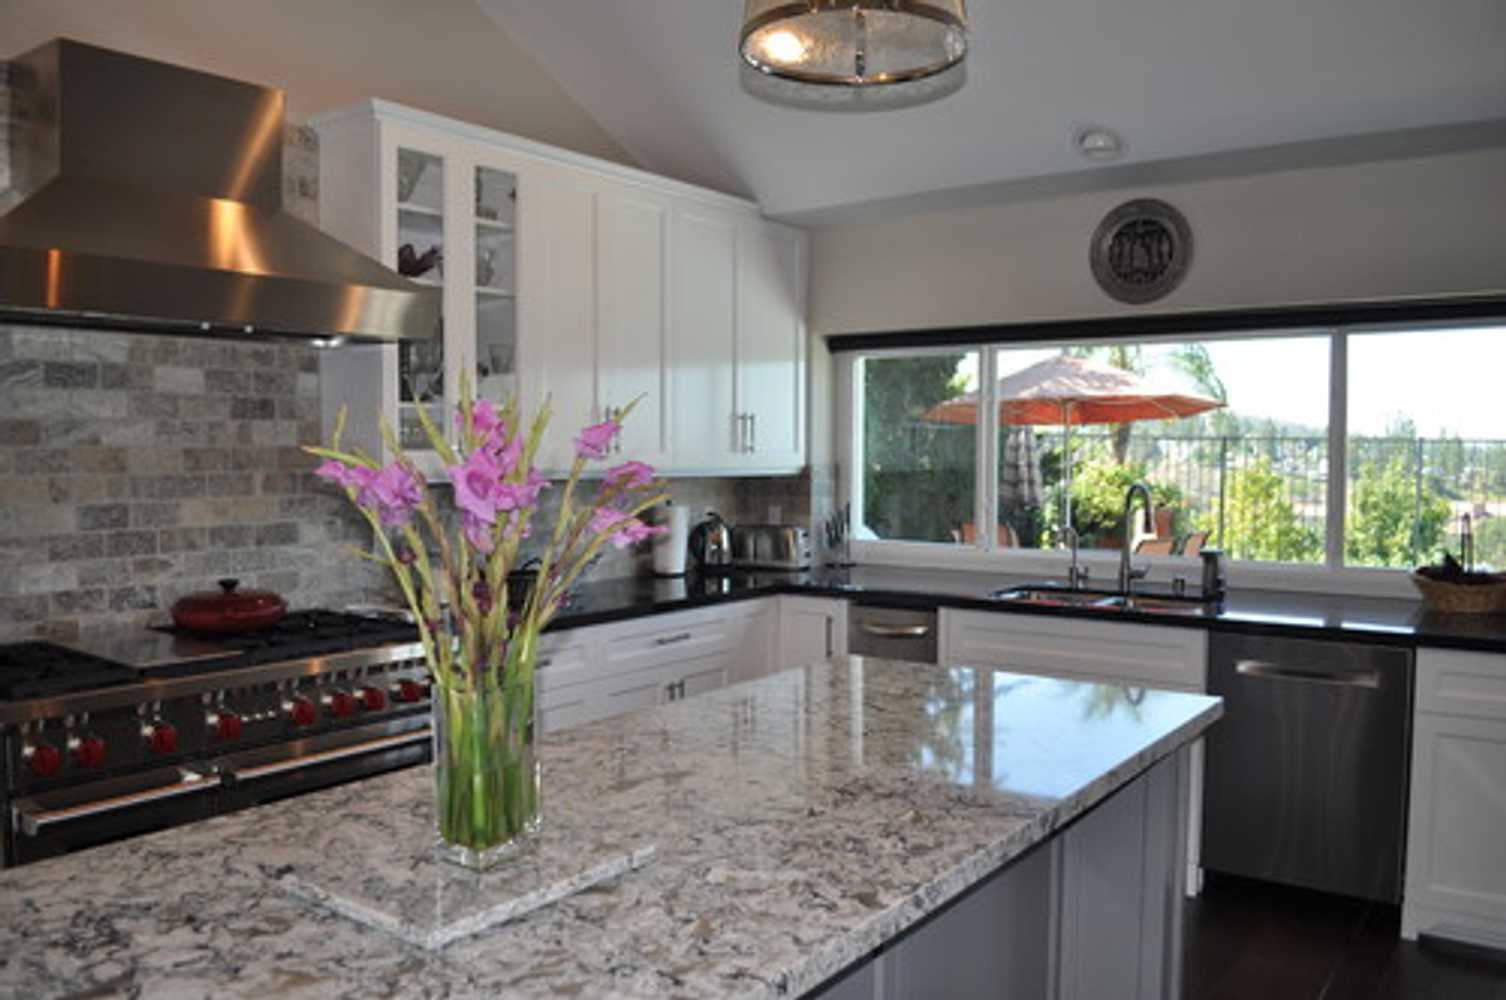 Anaheim Hills - Structural work & Custom kitchen remodel